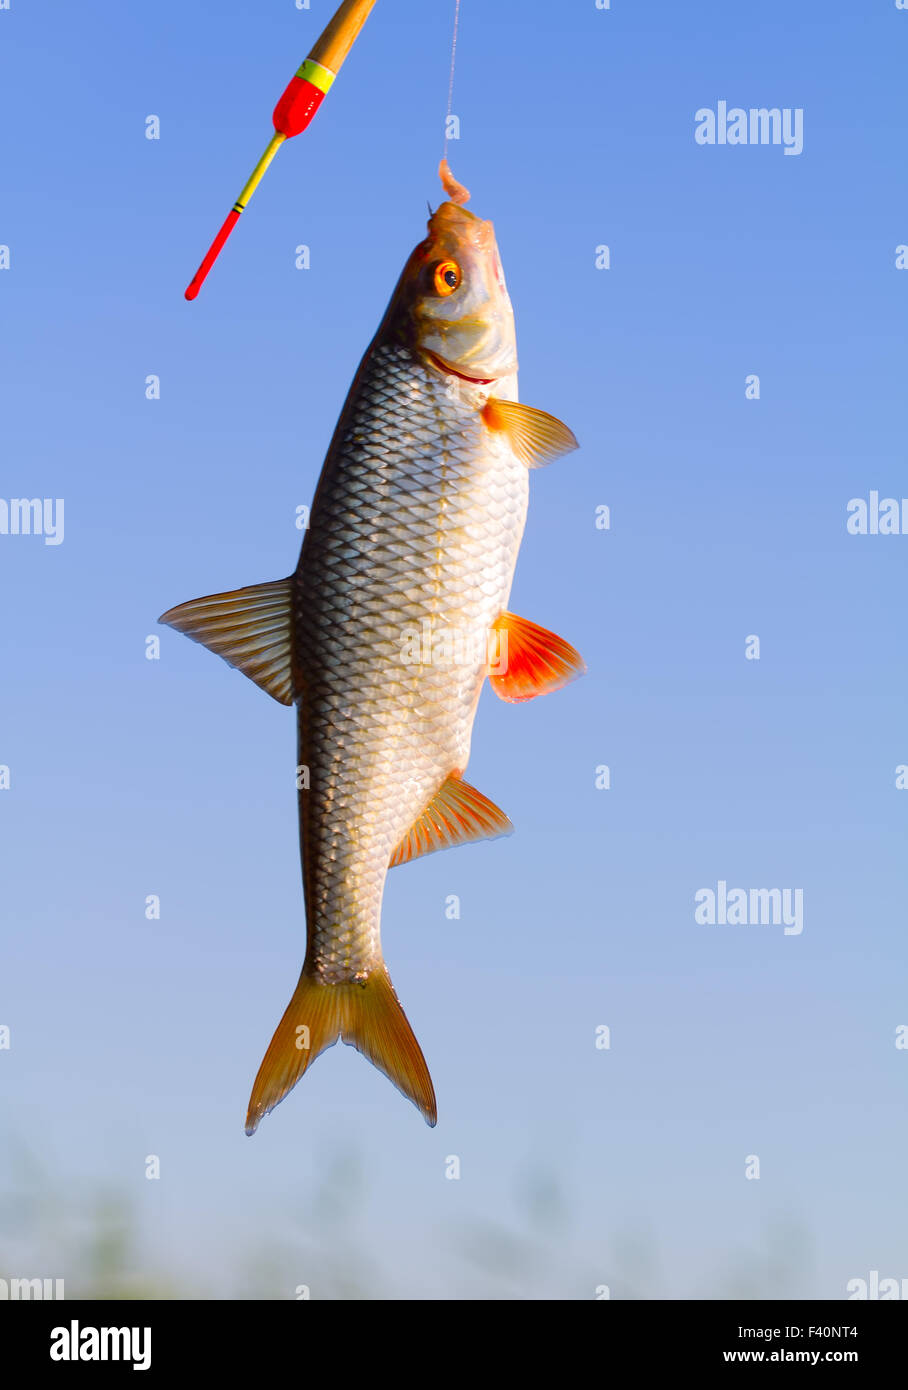 Angling roach pesce su una canna da pesca Foto Stock